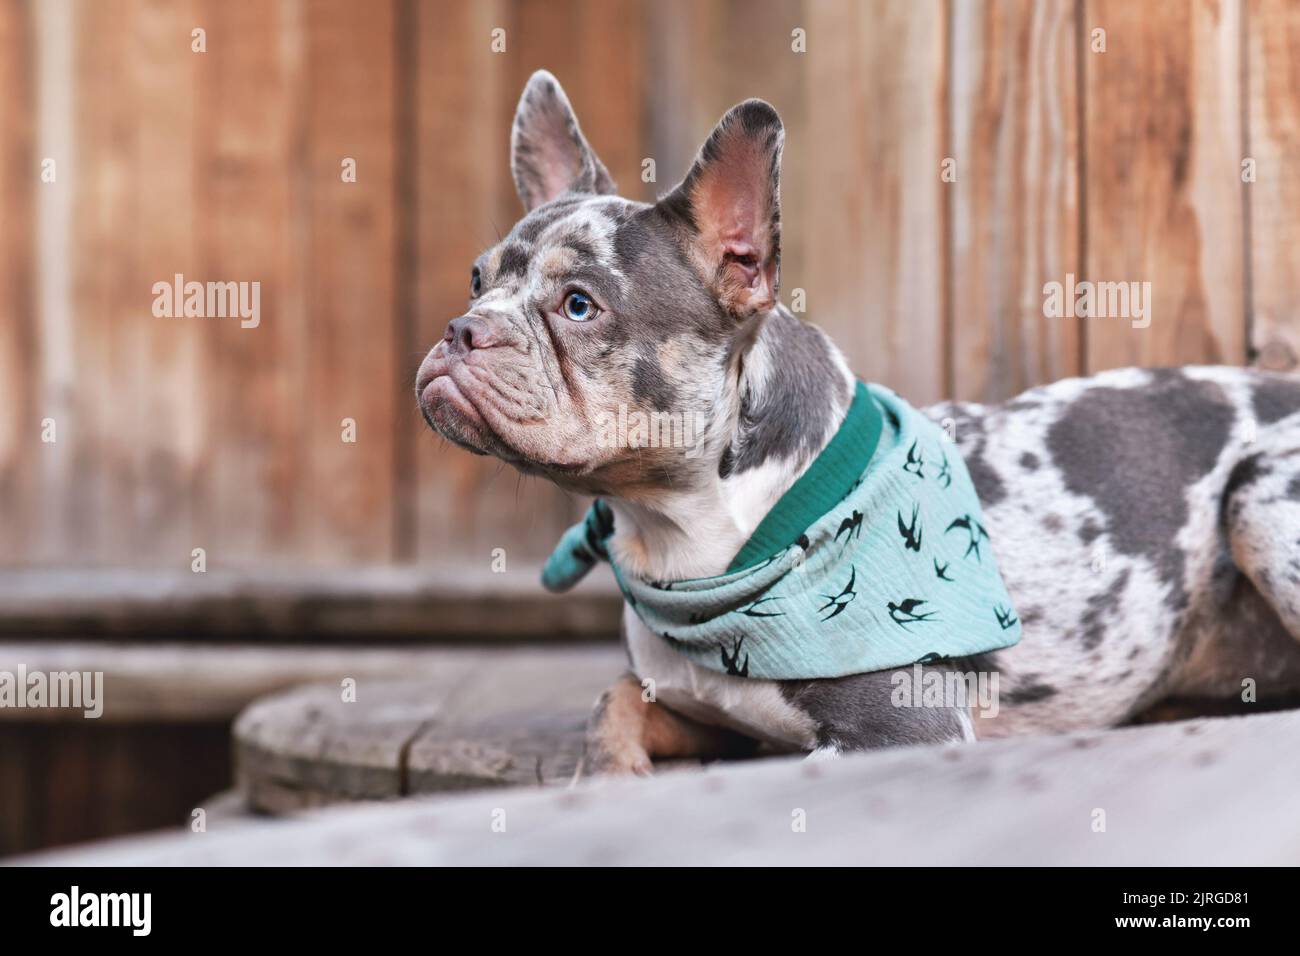 Französischer Bulldog-Hund mit grünem Nackentuch, der zwischen hölzernen industriellen Kabeltrommeln liegt Stockfoto